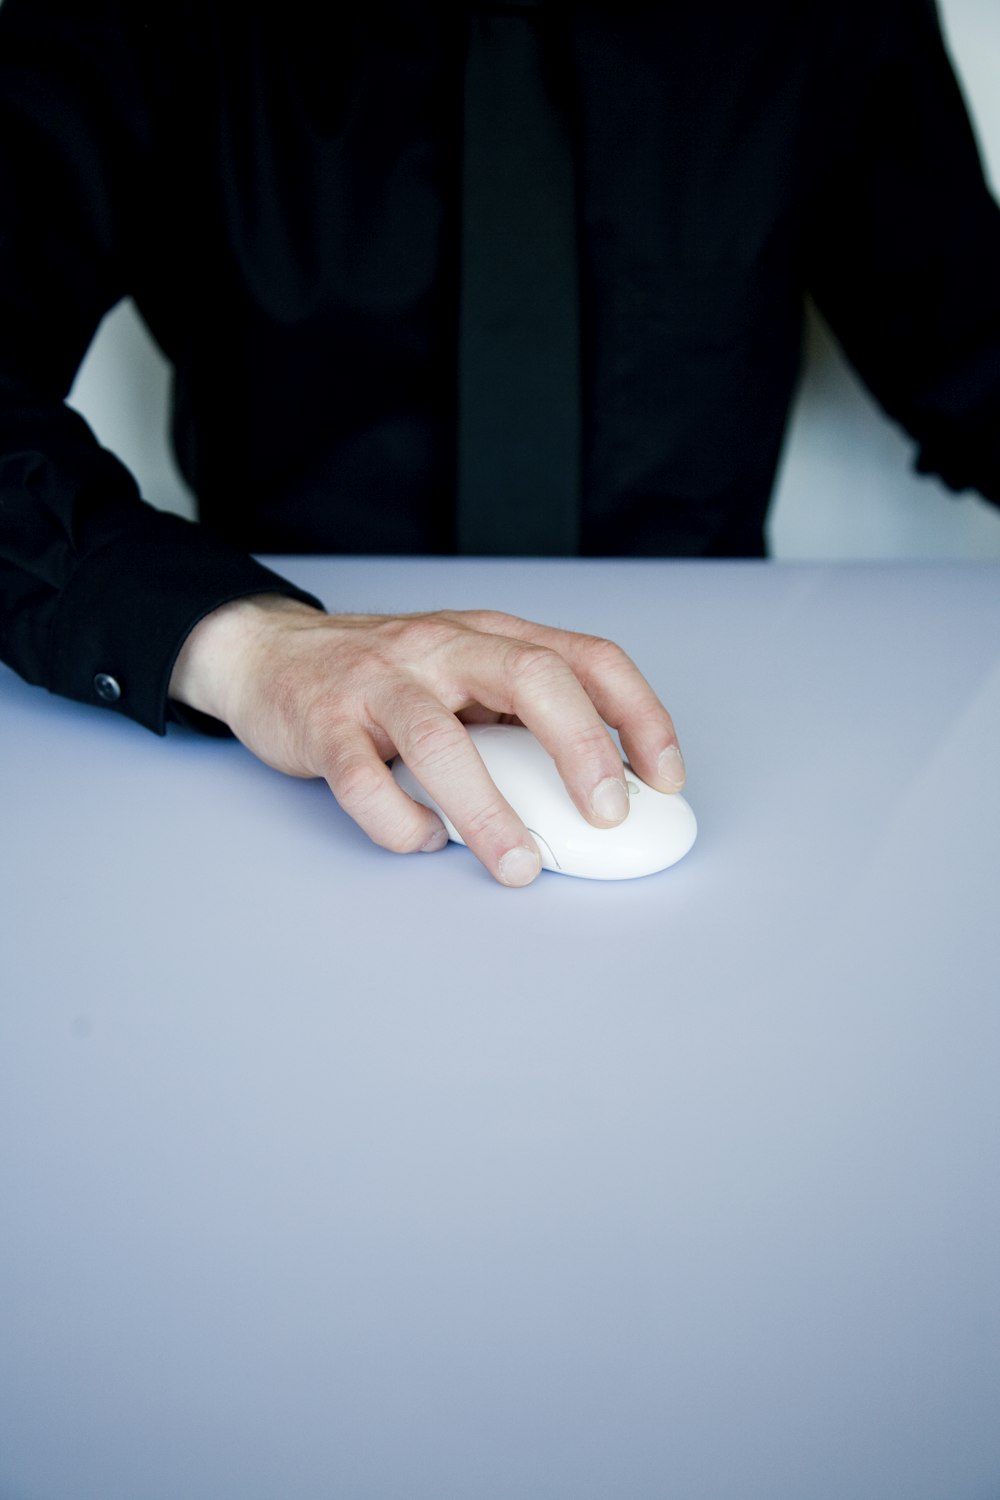 Persona sosteniendo un mouse de computadora inalámbrico blanco